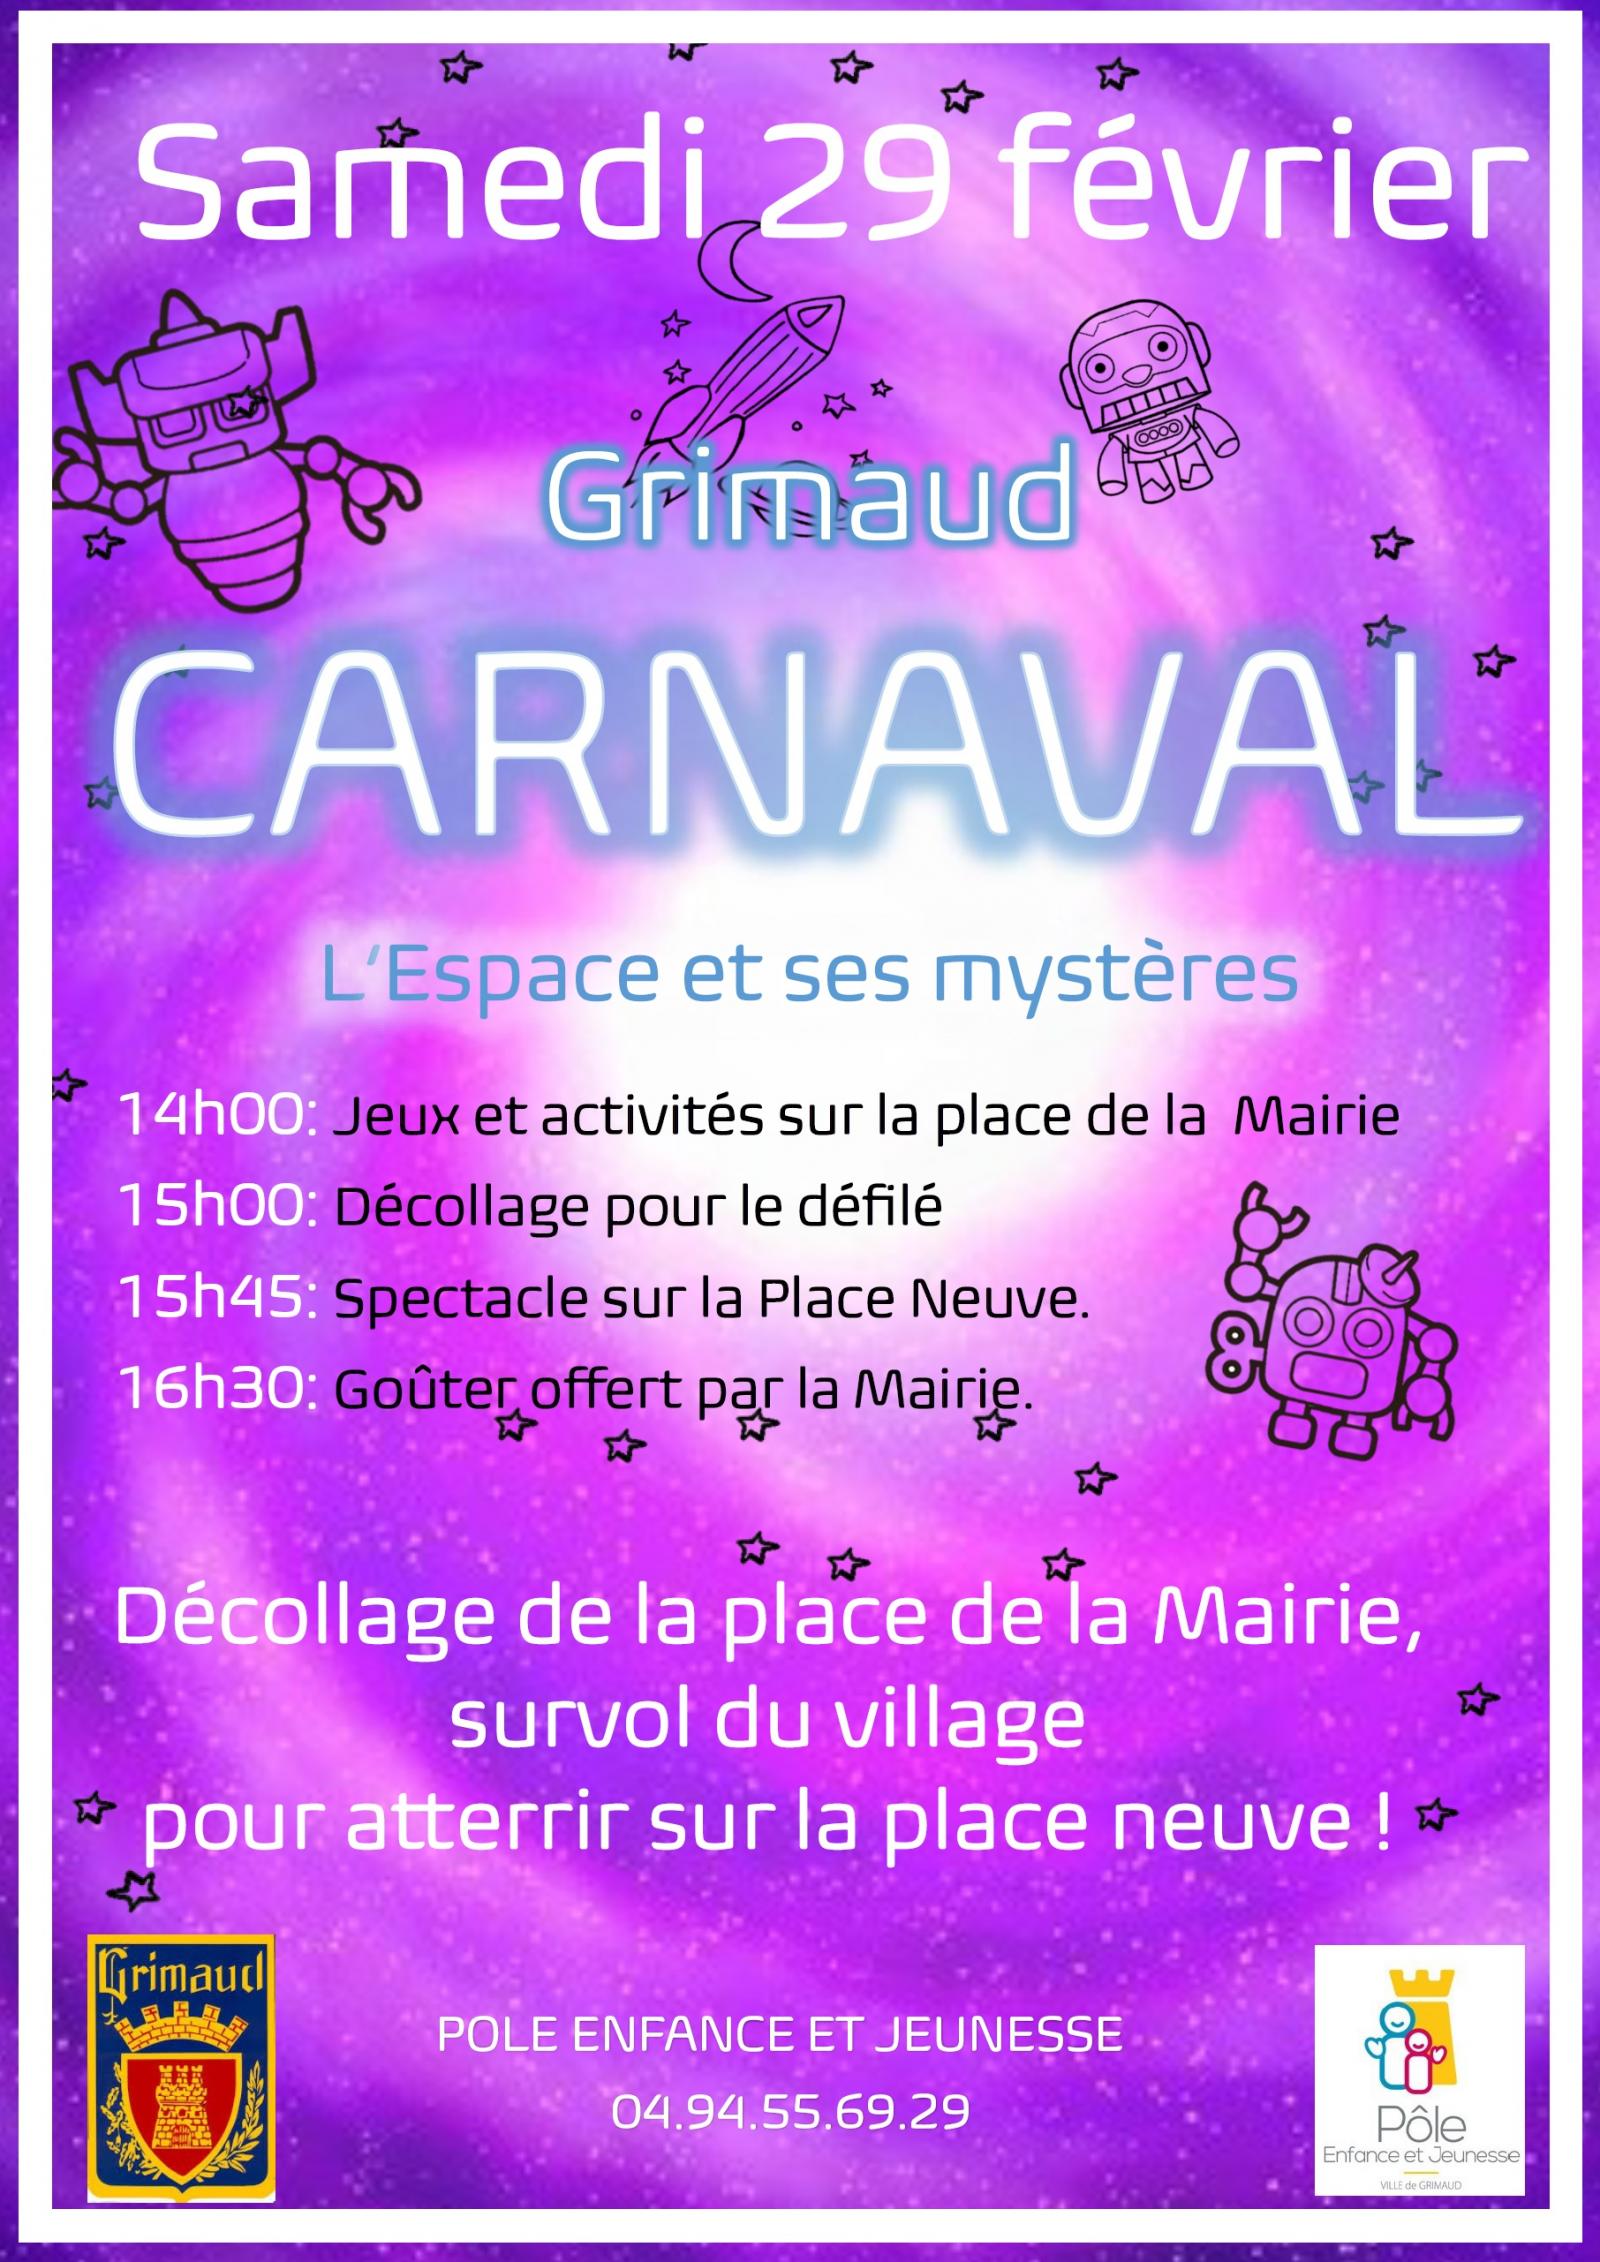 Samedi 29 février 2020 : Carnaval des enfants